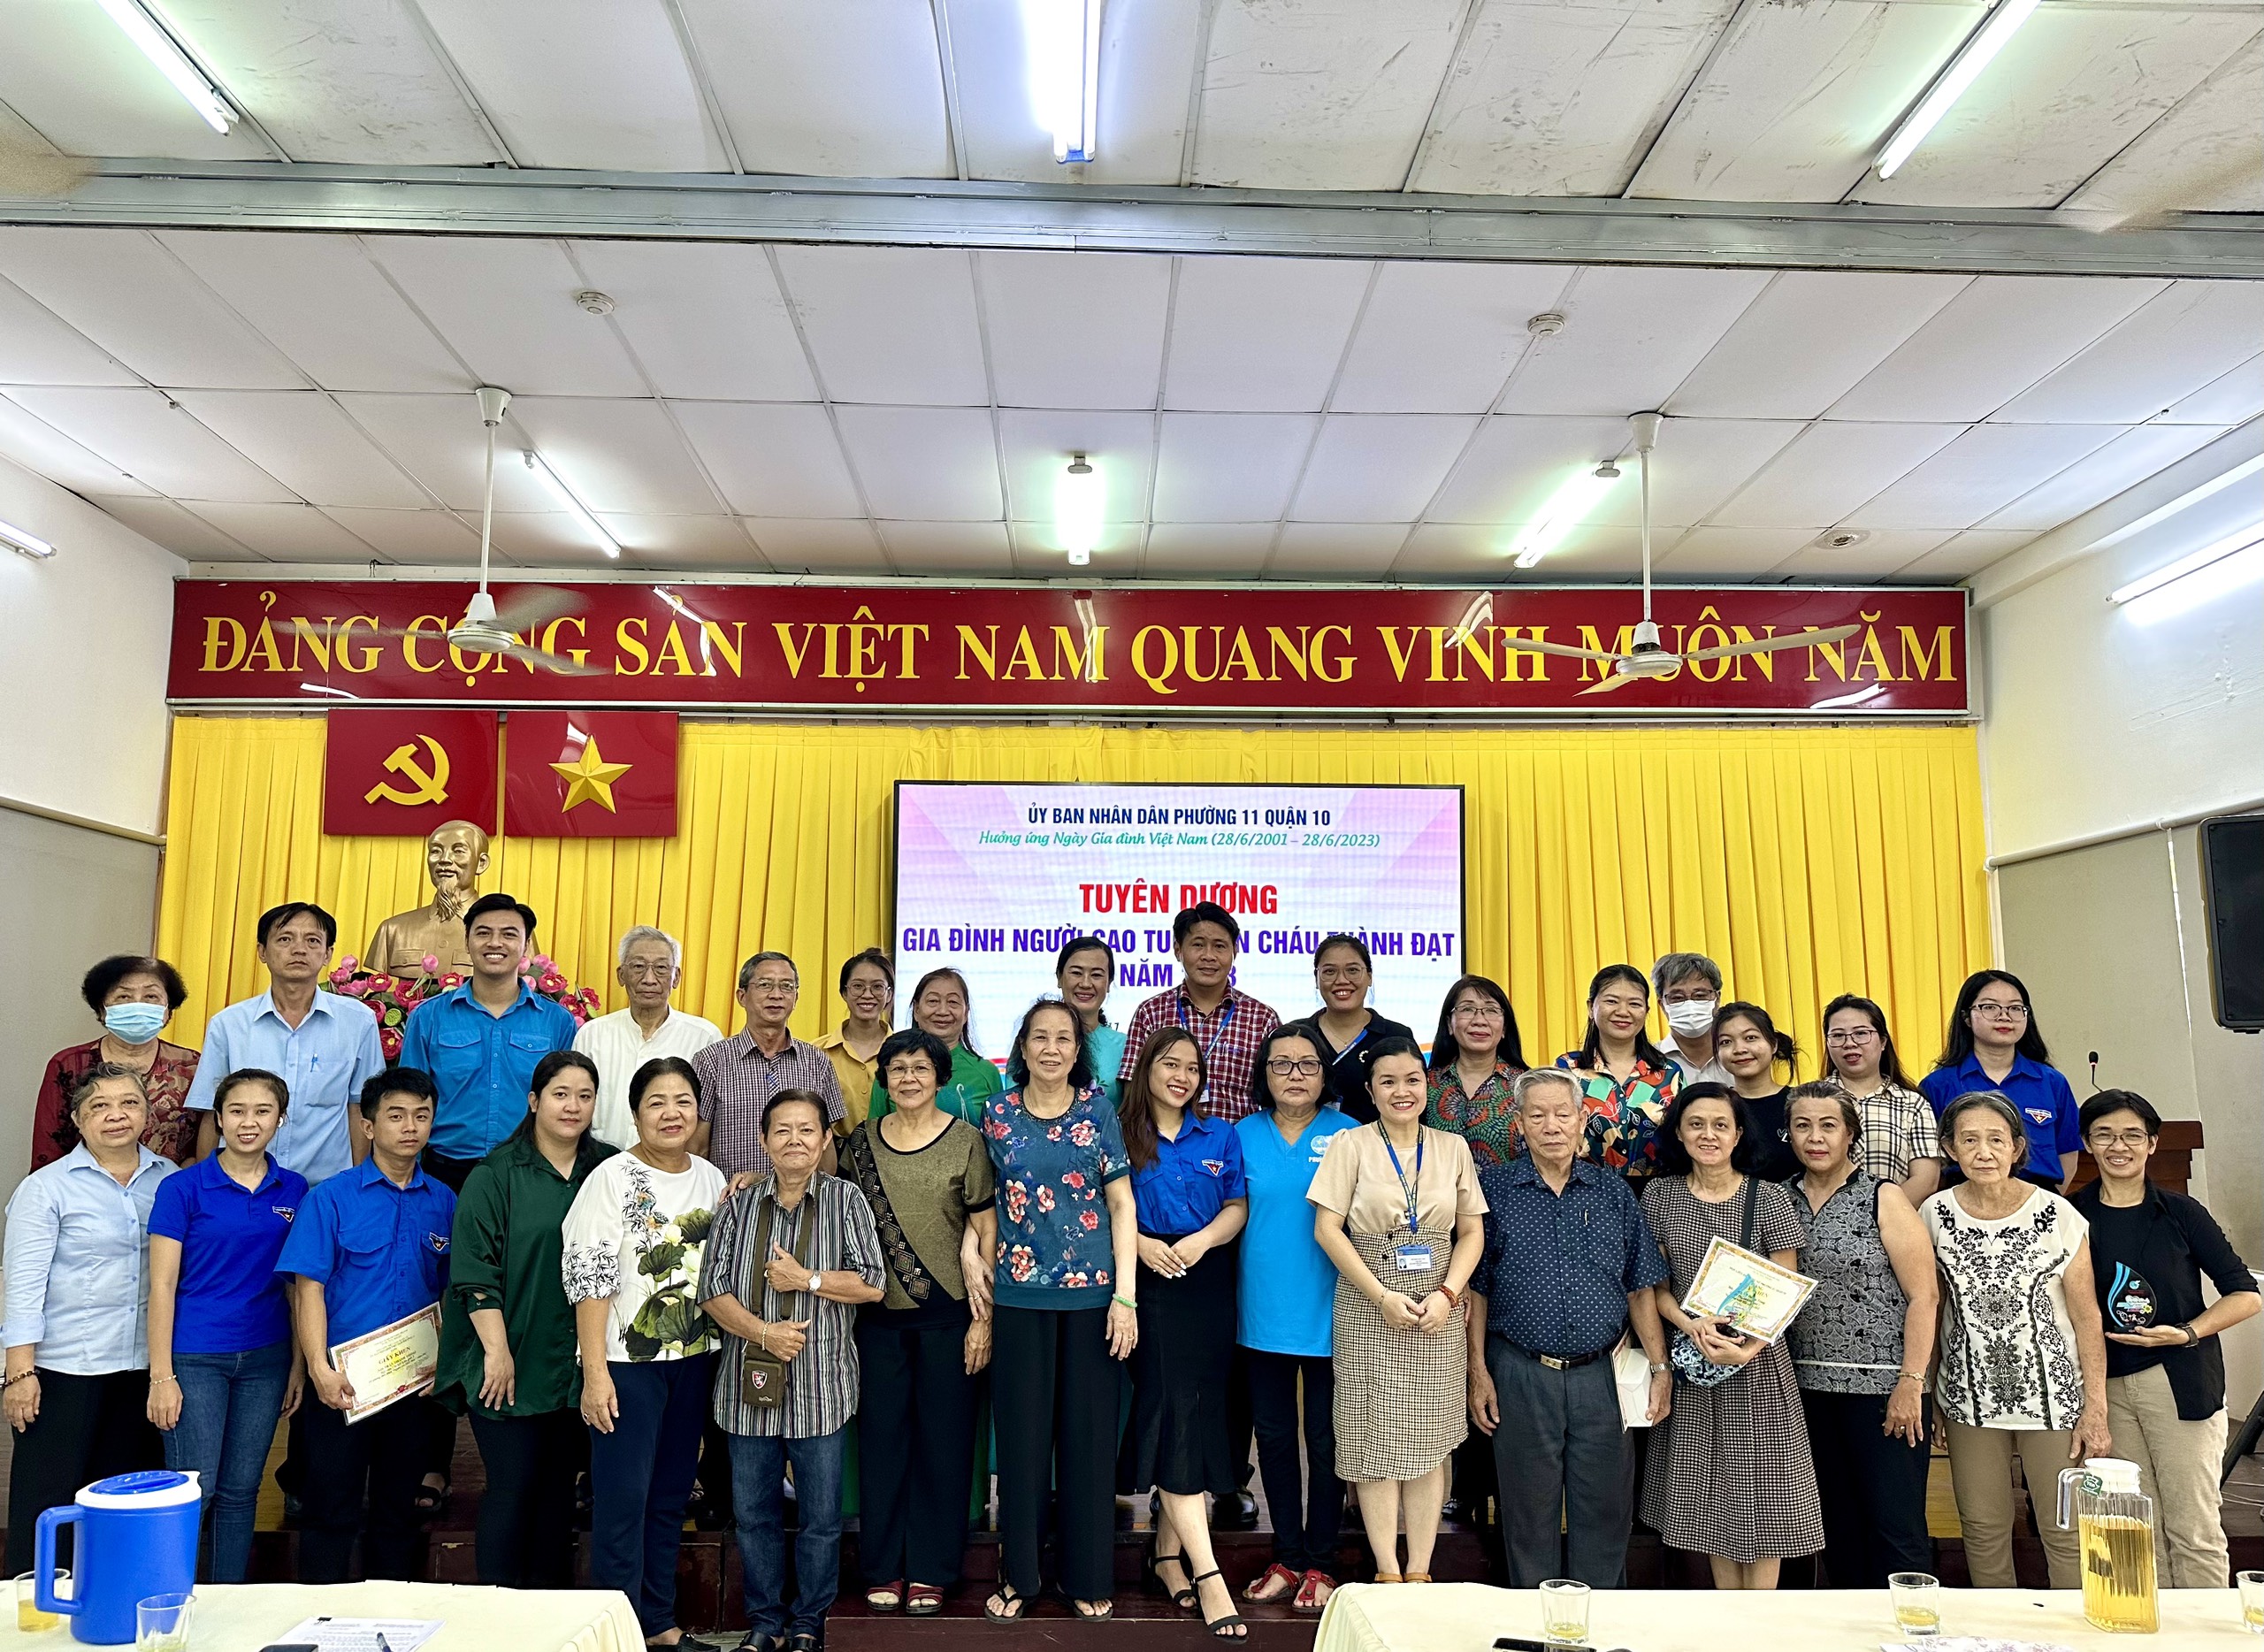 Image: Phường 11 tổ chức các hoạt động hưởng ứng Ngày gia đình Việt Nam 28/6